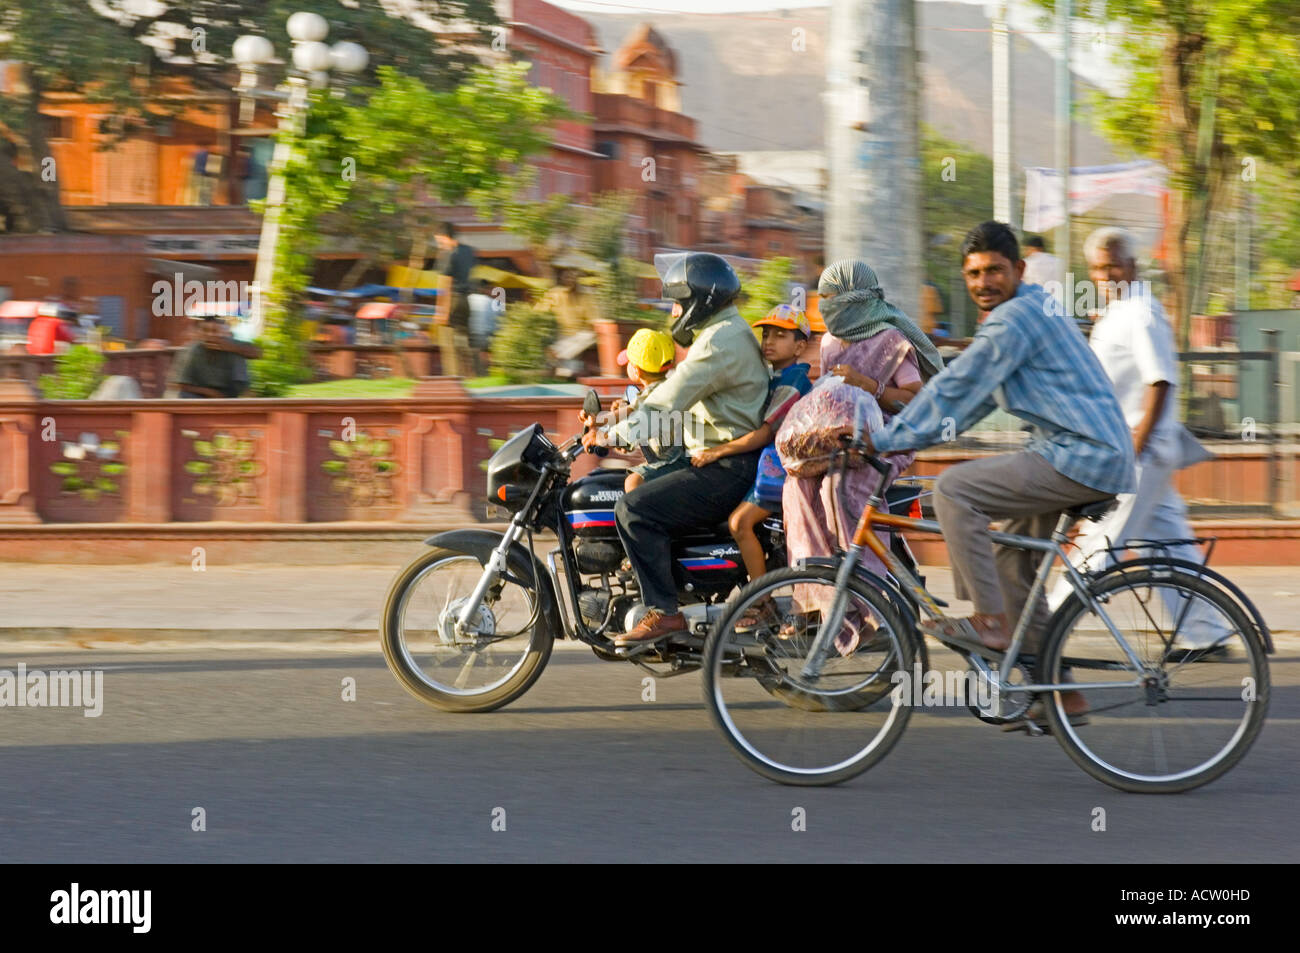 Une famille indienne de 4 sur une moto et l'homme à vélo dans une scène de rue typique à Jaipur avec le panoramique de flou. Banque D'Images